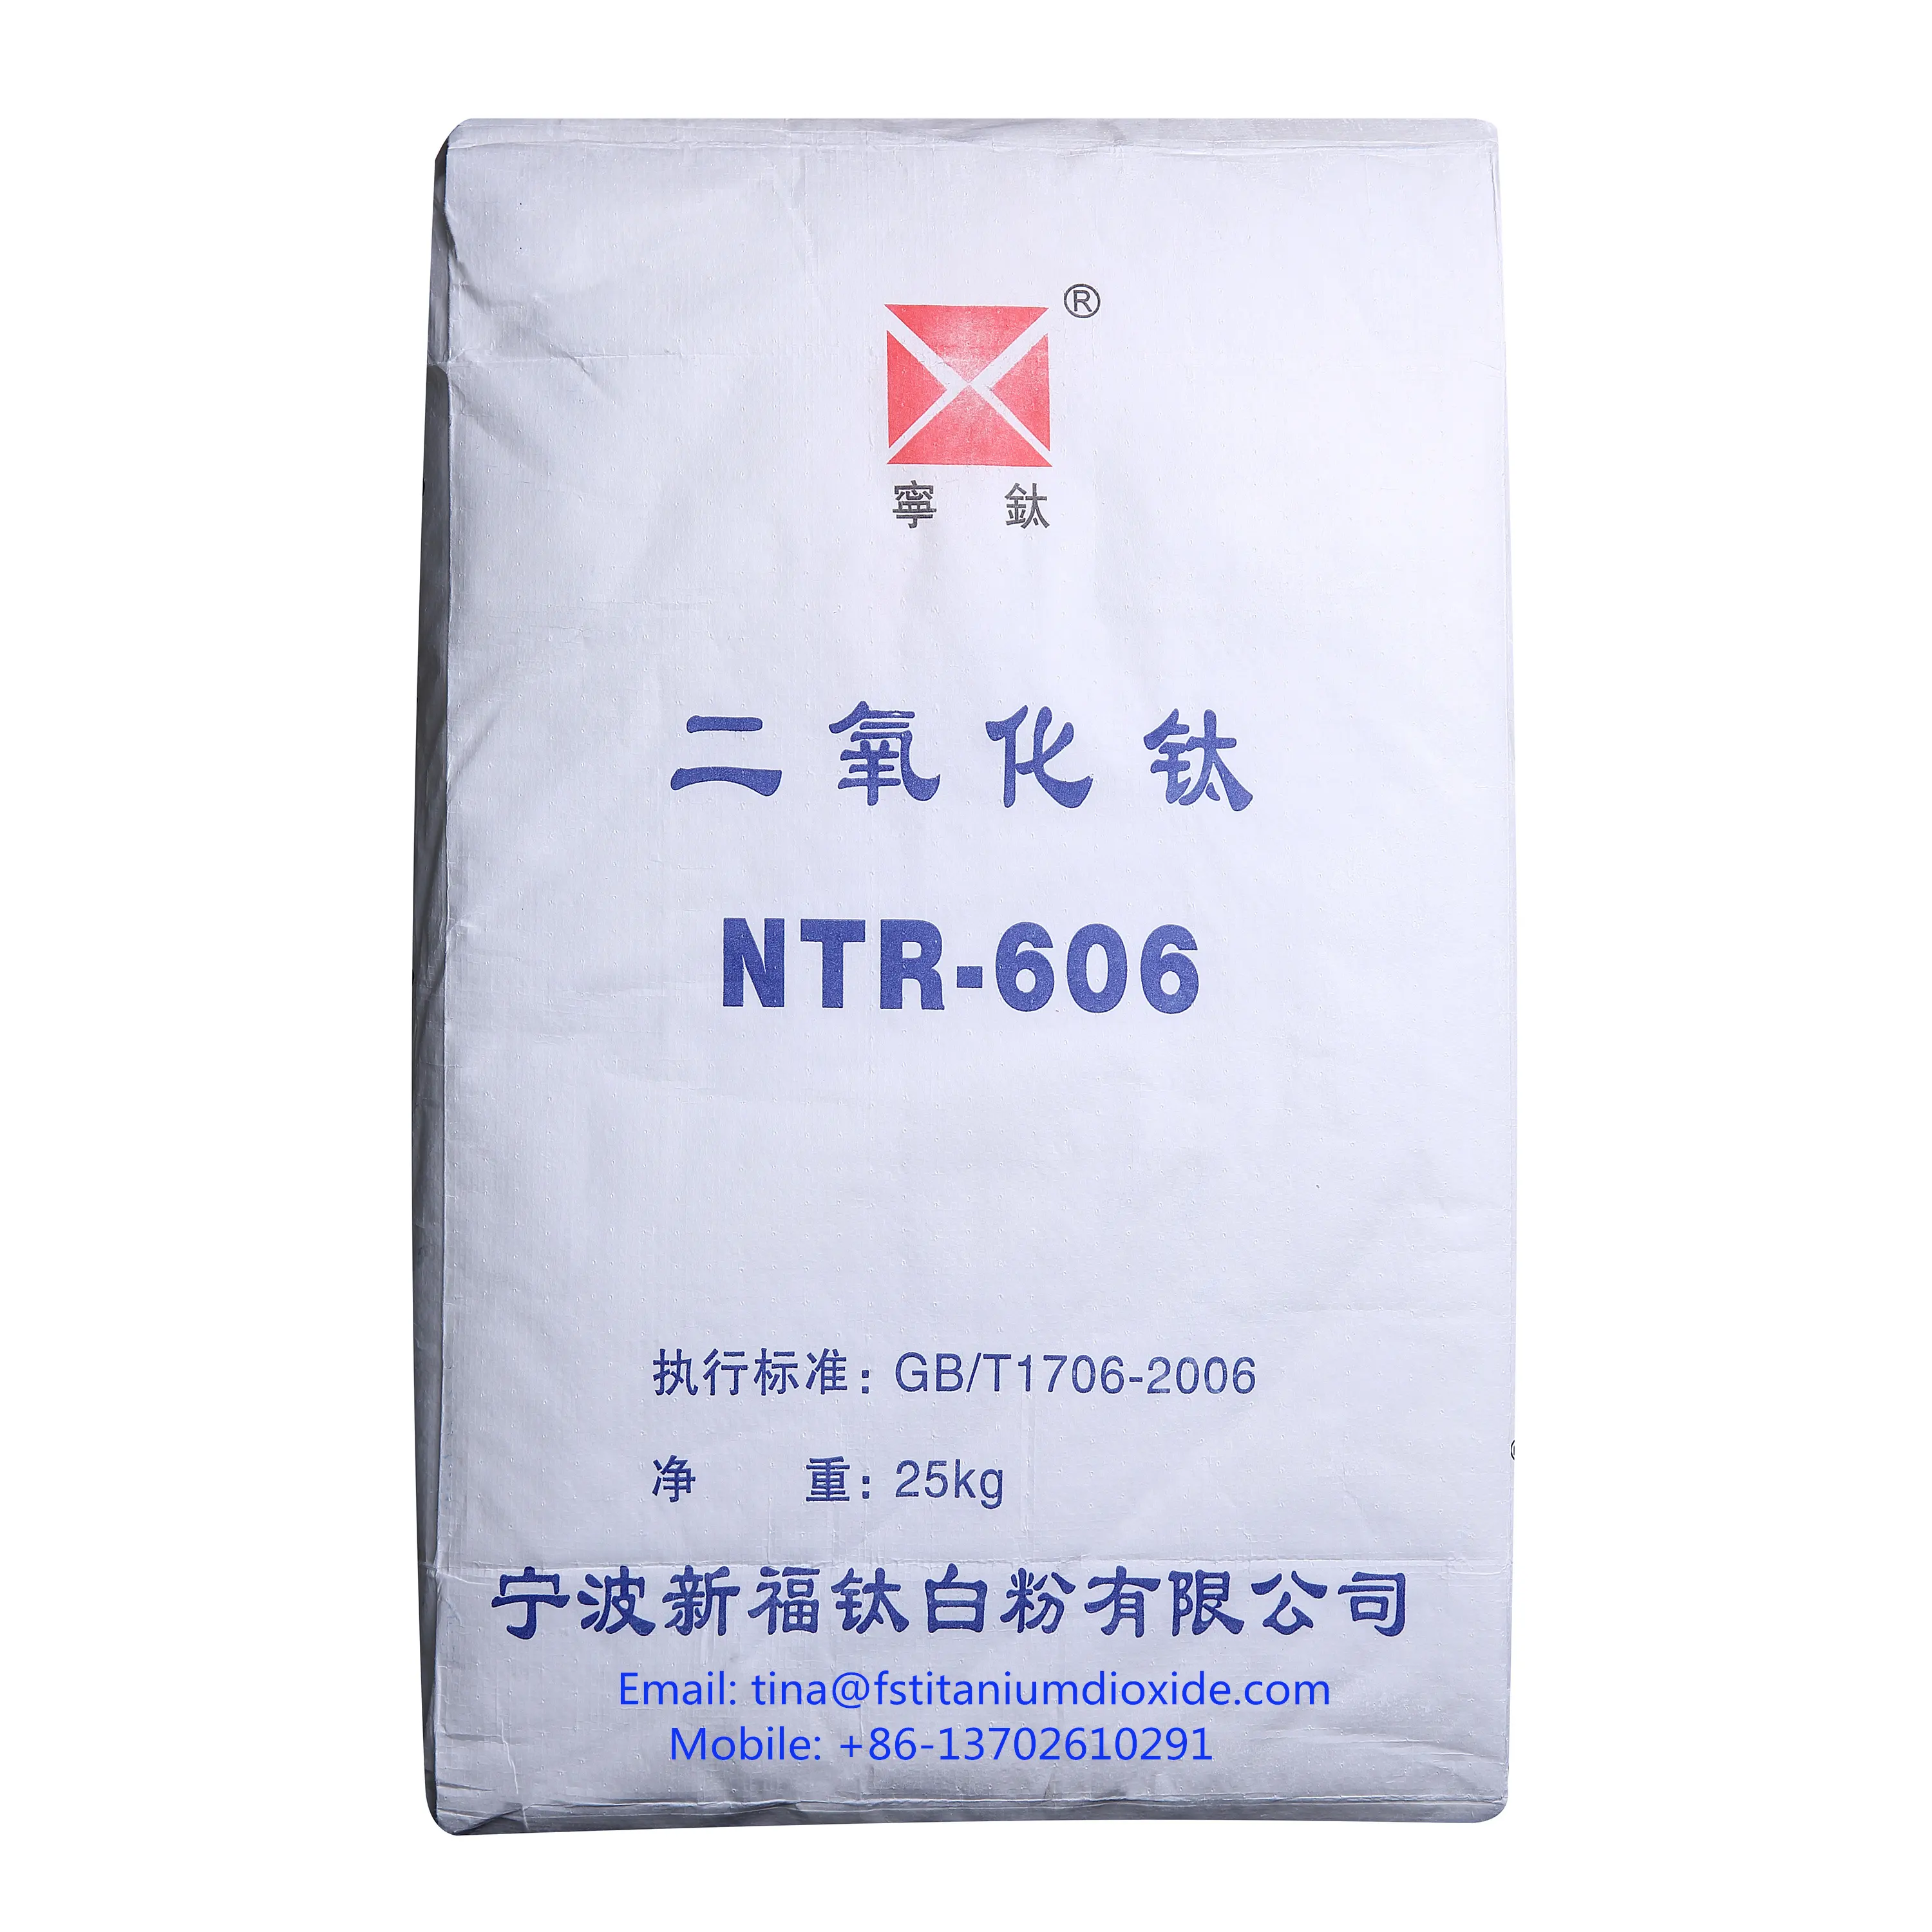 NTR-606 טיטניום דו חמצני רוטיל, טיטניום דו חמצני רוטיל, טיטניום דו חמצני מחיר